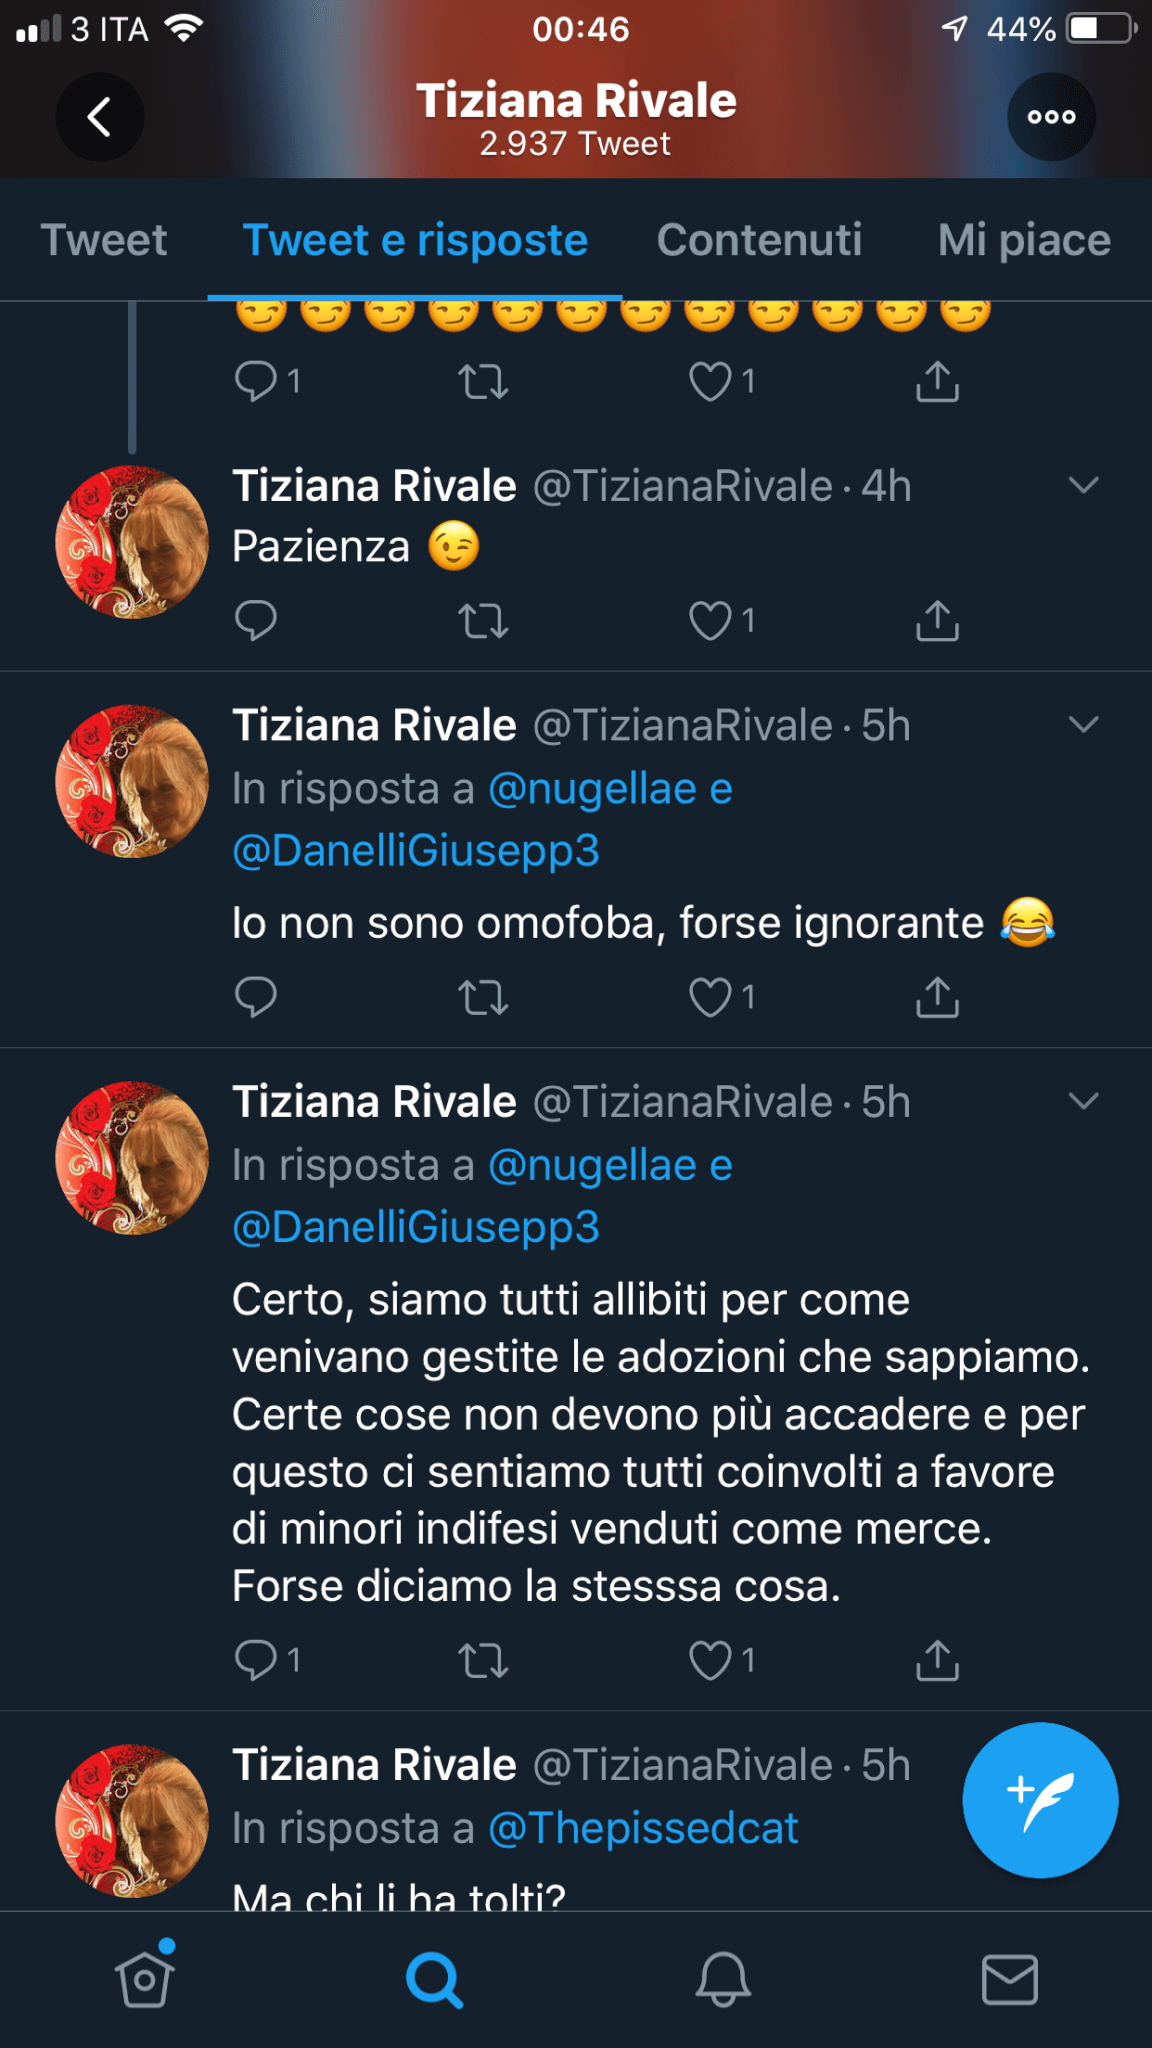 Tiziana Rivale contro Tiziano Ferro: "I figli vengono partoriti dalle donne, adottasse" - IMG 4859 - Gay.it